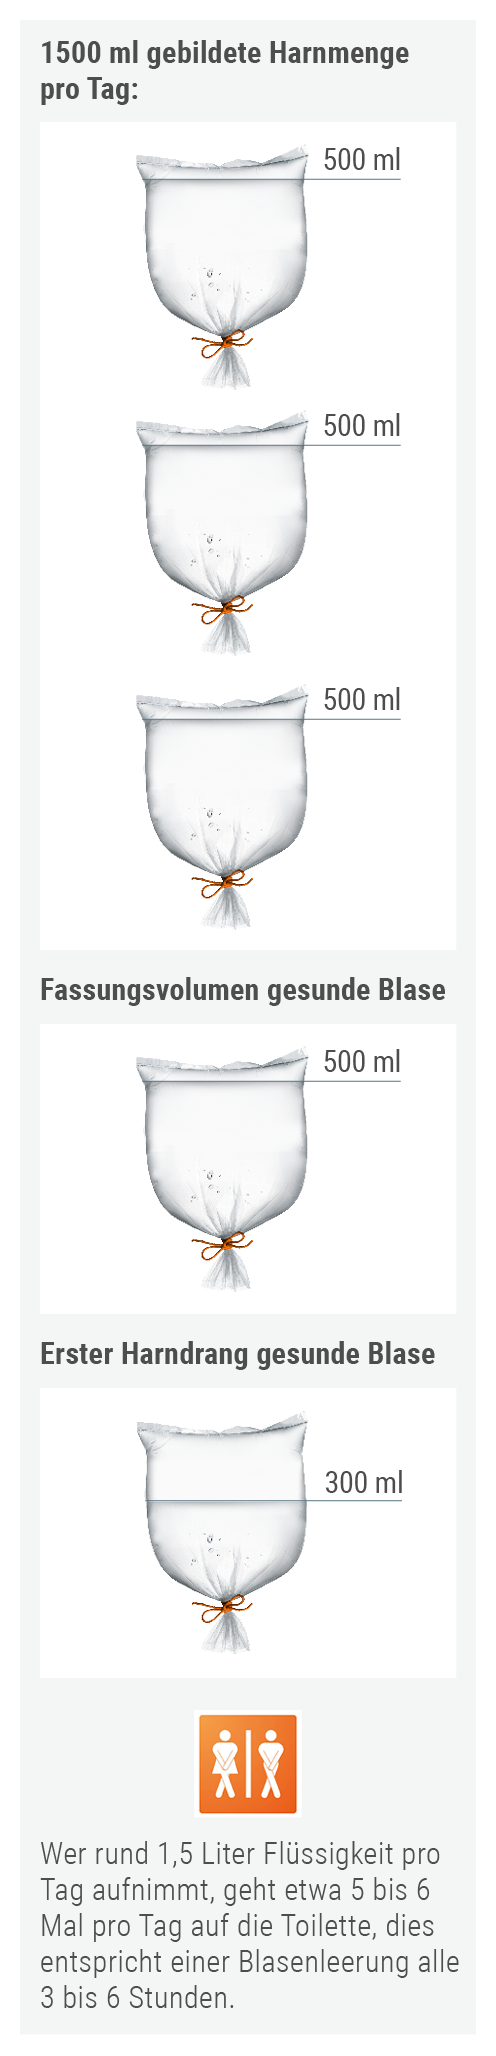 ast_blase-ok_Verstehen_So-funktioniert-die-Blase_2.png